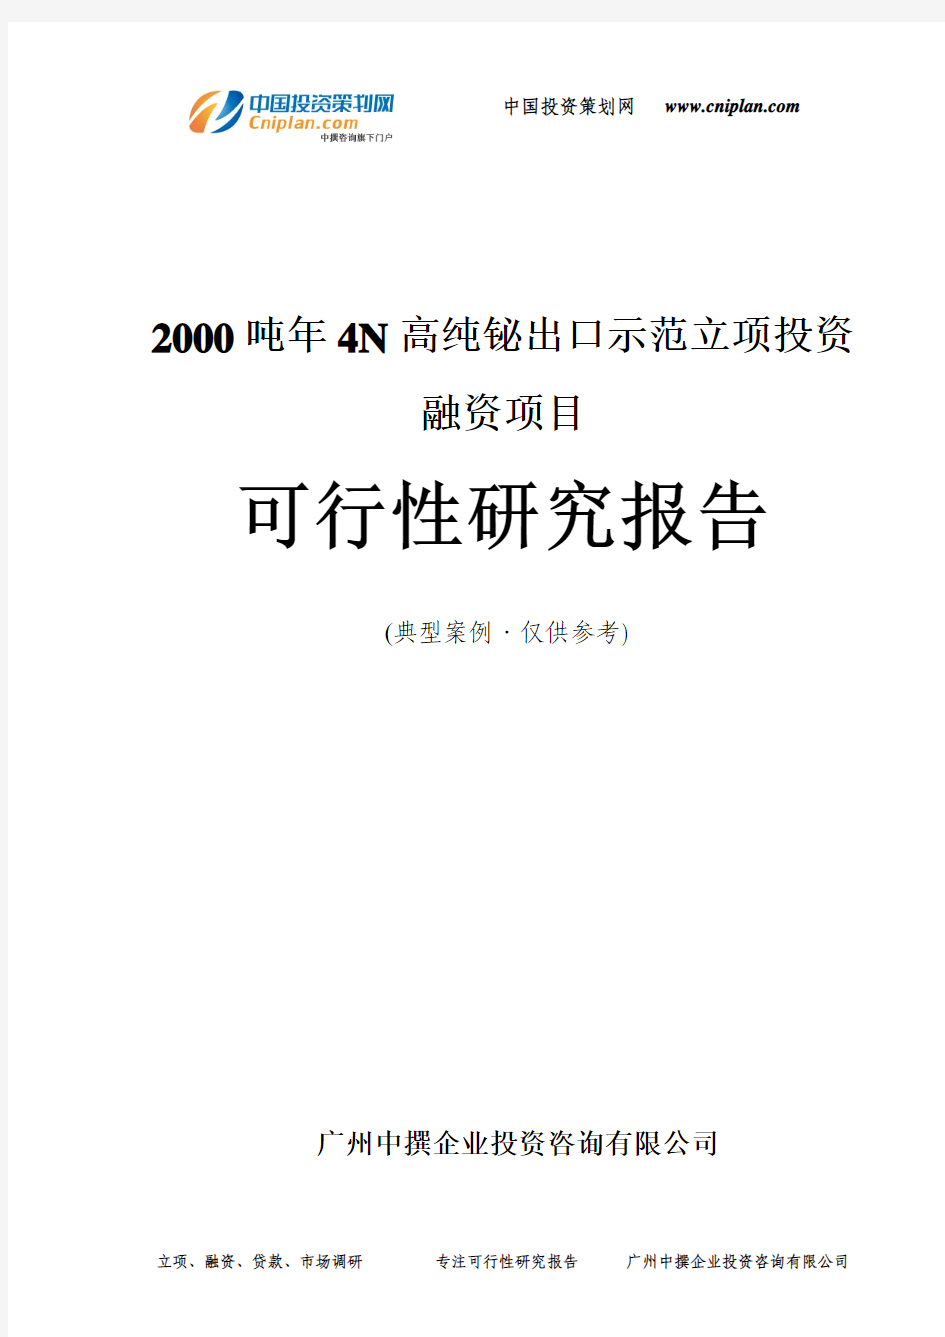 2000吨年4N高纯铋出口示范融资投资立项项目可行性研究报告(中撰咨询)